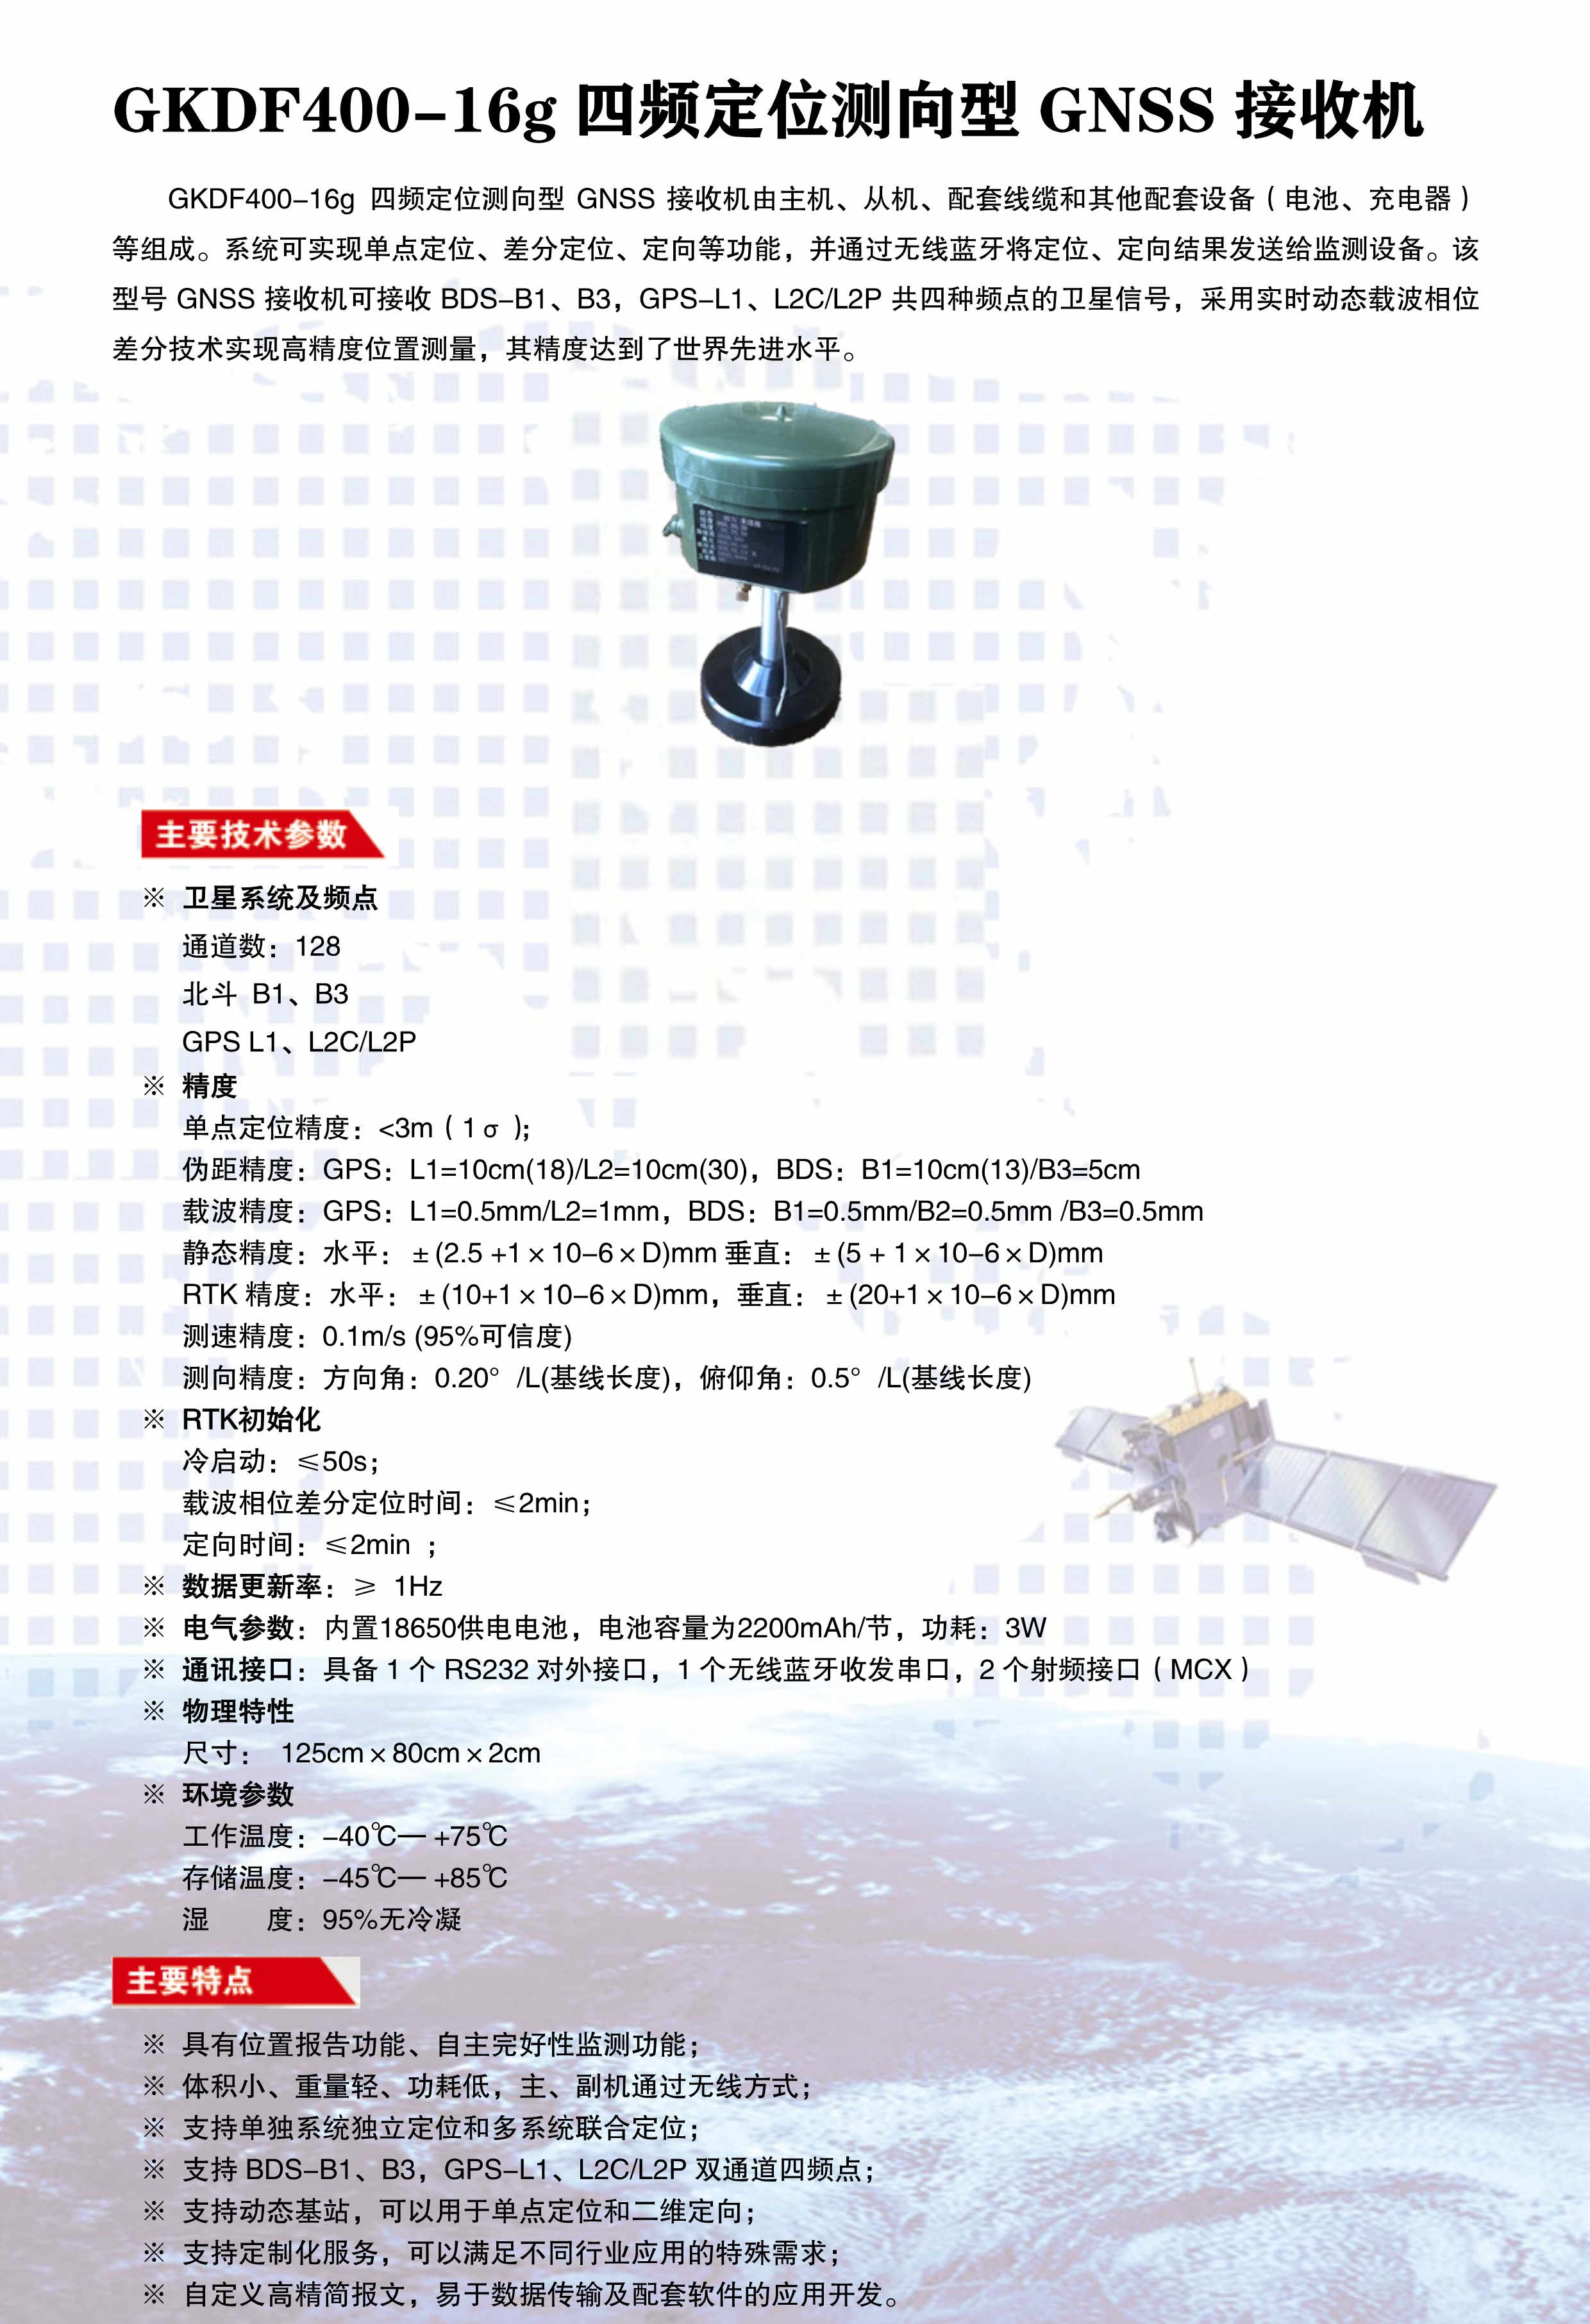 GKDF400-16g四频定位测向型GNSS接收机-彩页版1_副本.jpg